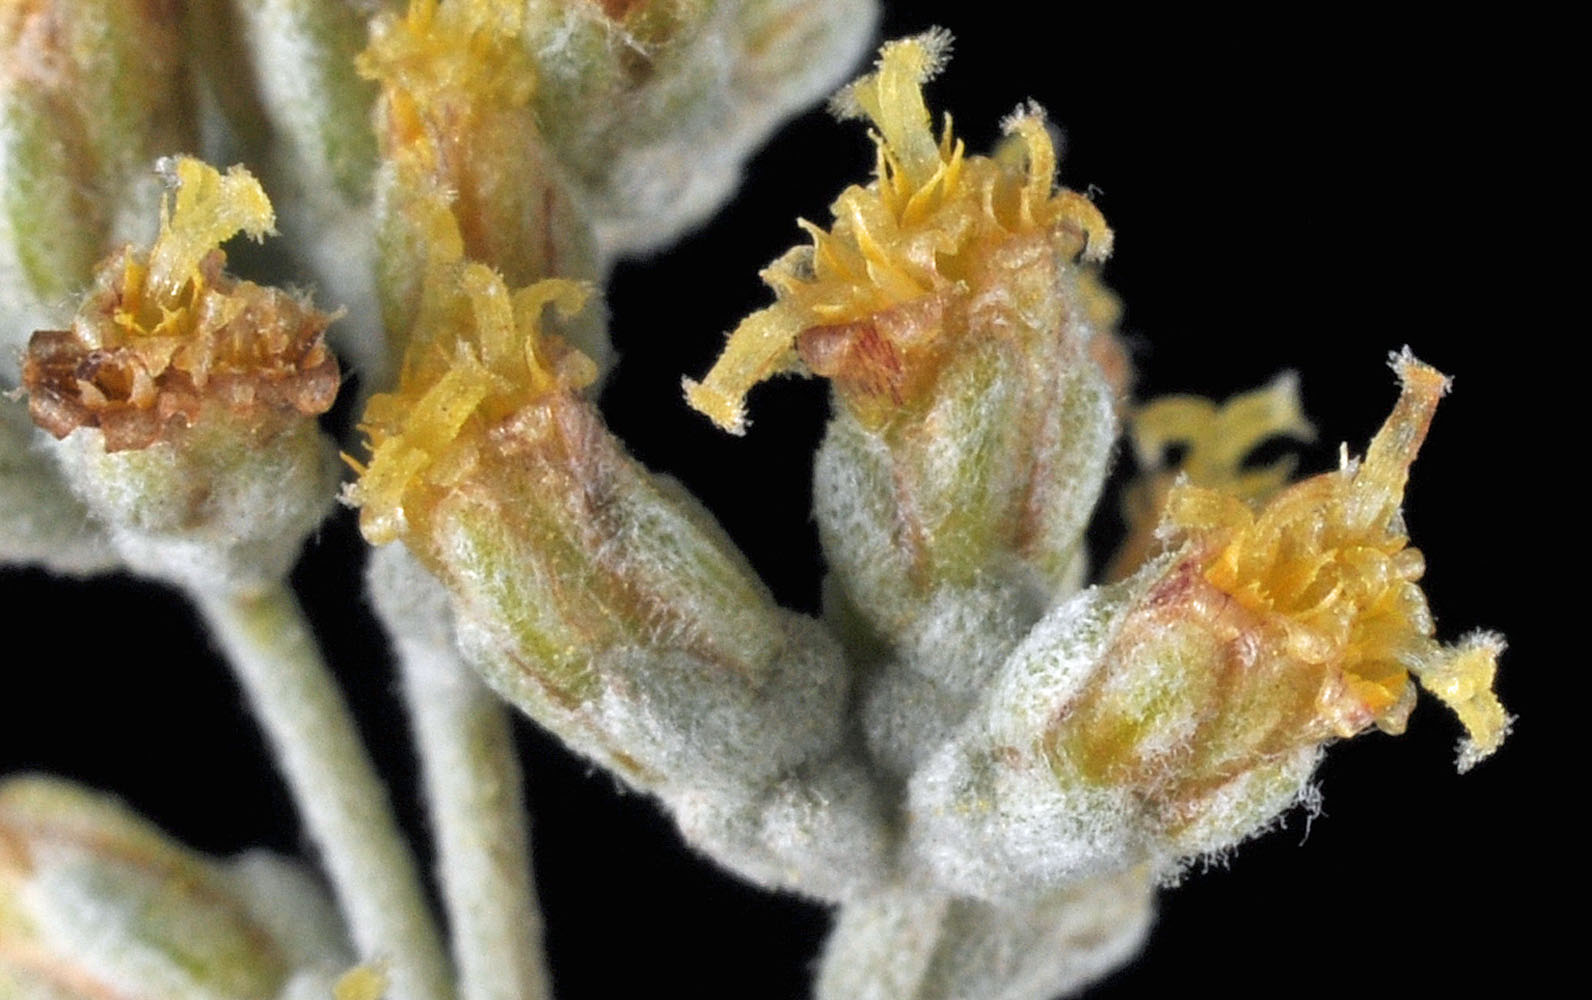 Flora of Eastern Washington Image: Artemisia tridentata